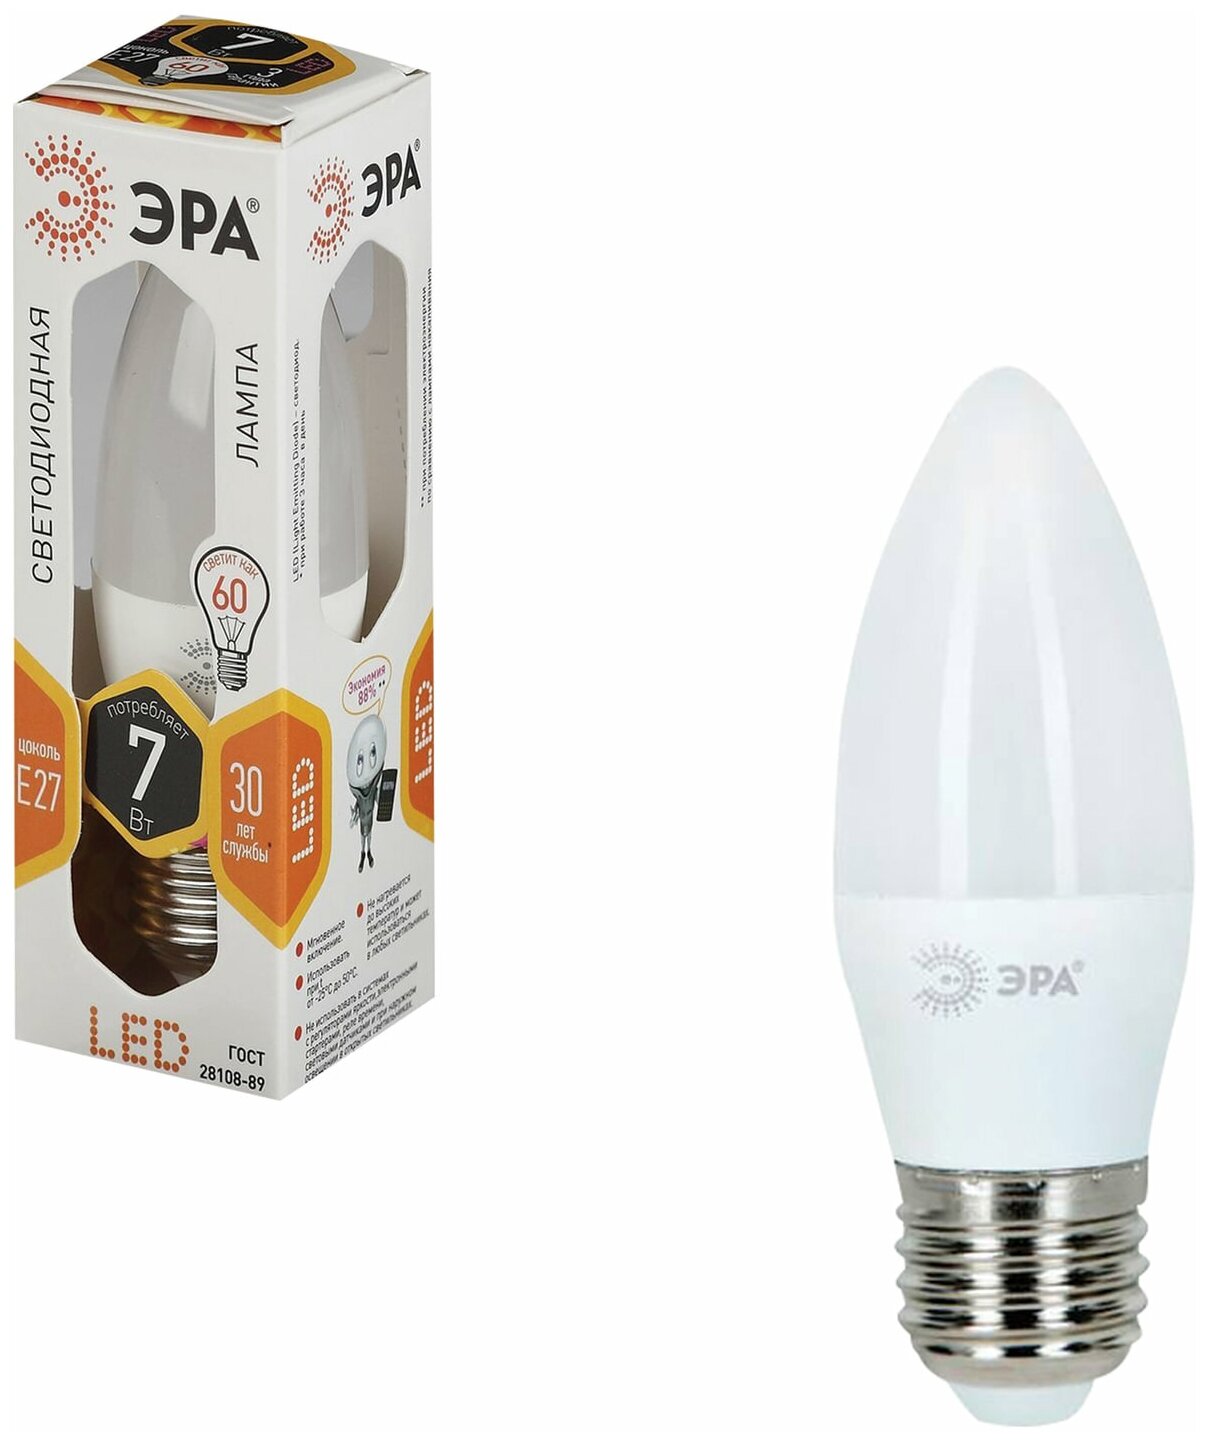 Лампа светодиодная ЭРА, 7 (60) Вт, цоколь E27, "свеча", теплый белый свет, 30000 ч, LED smdB35-7w-827-E27 В комплекте: 3шт.